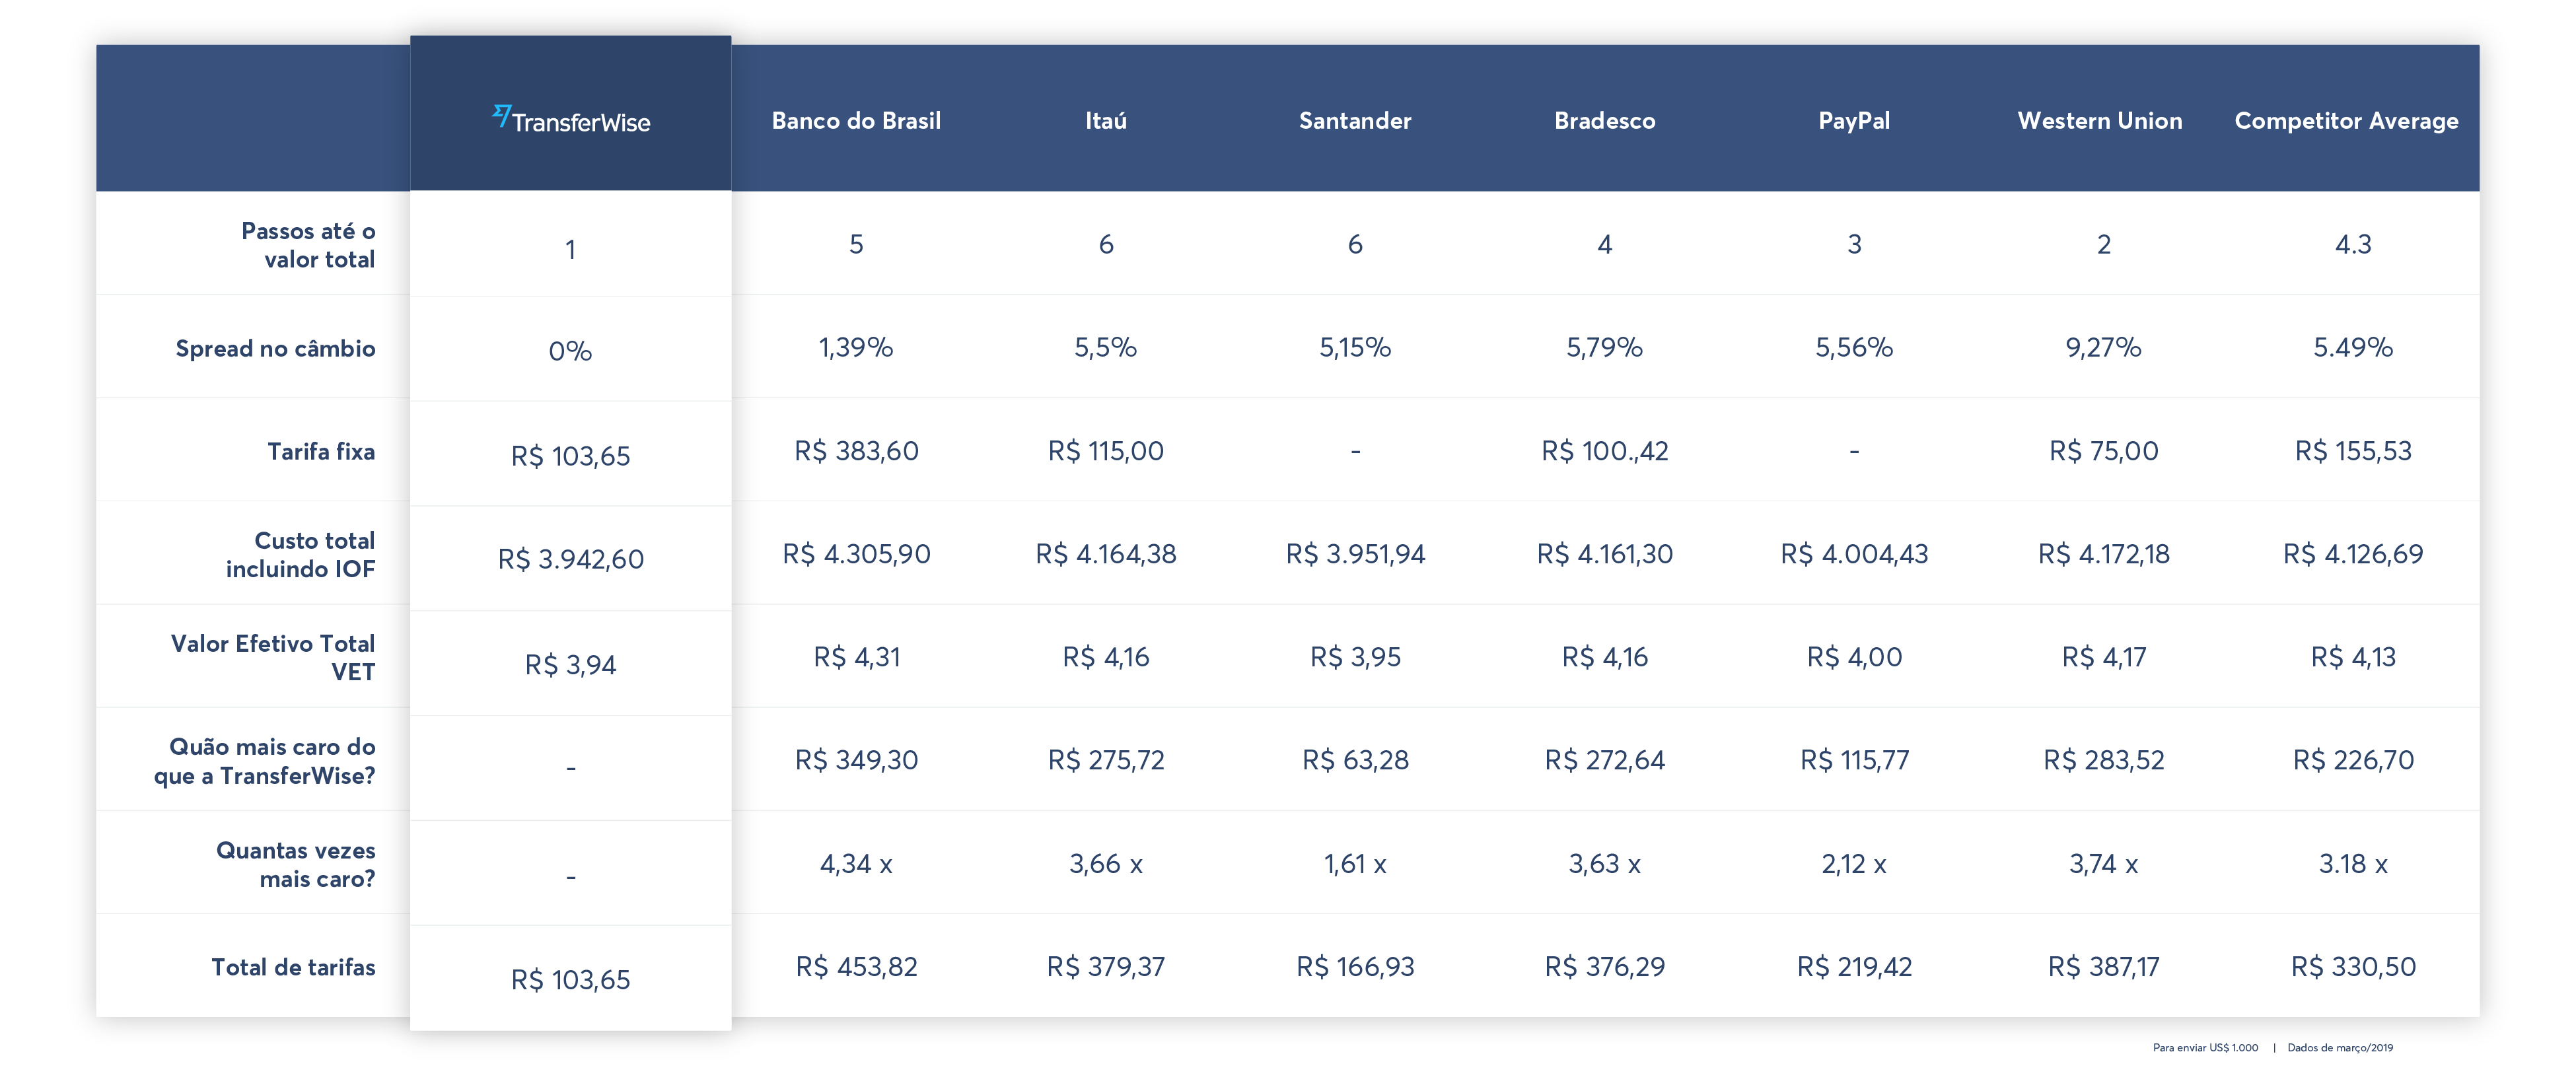 Tabela comparativa da Transferwise comparado com outras empresas de transferência de remessas internacionais